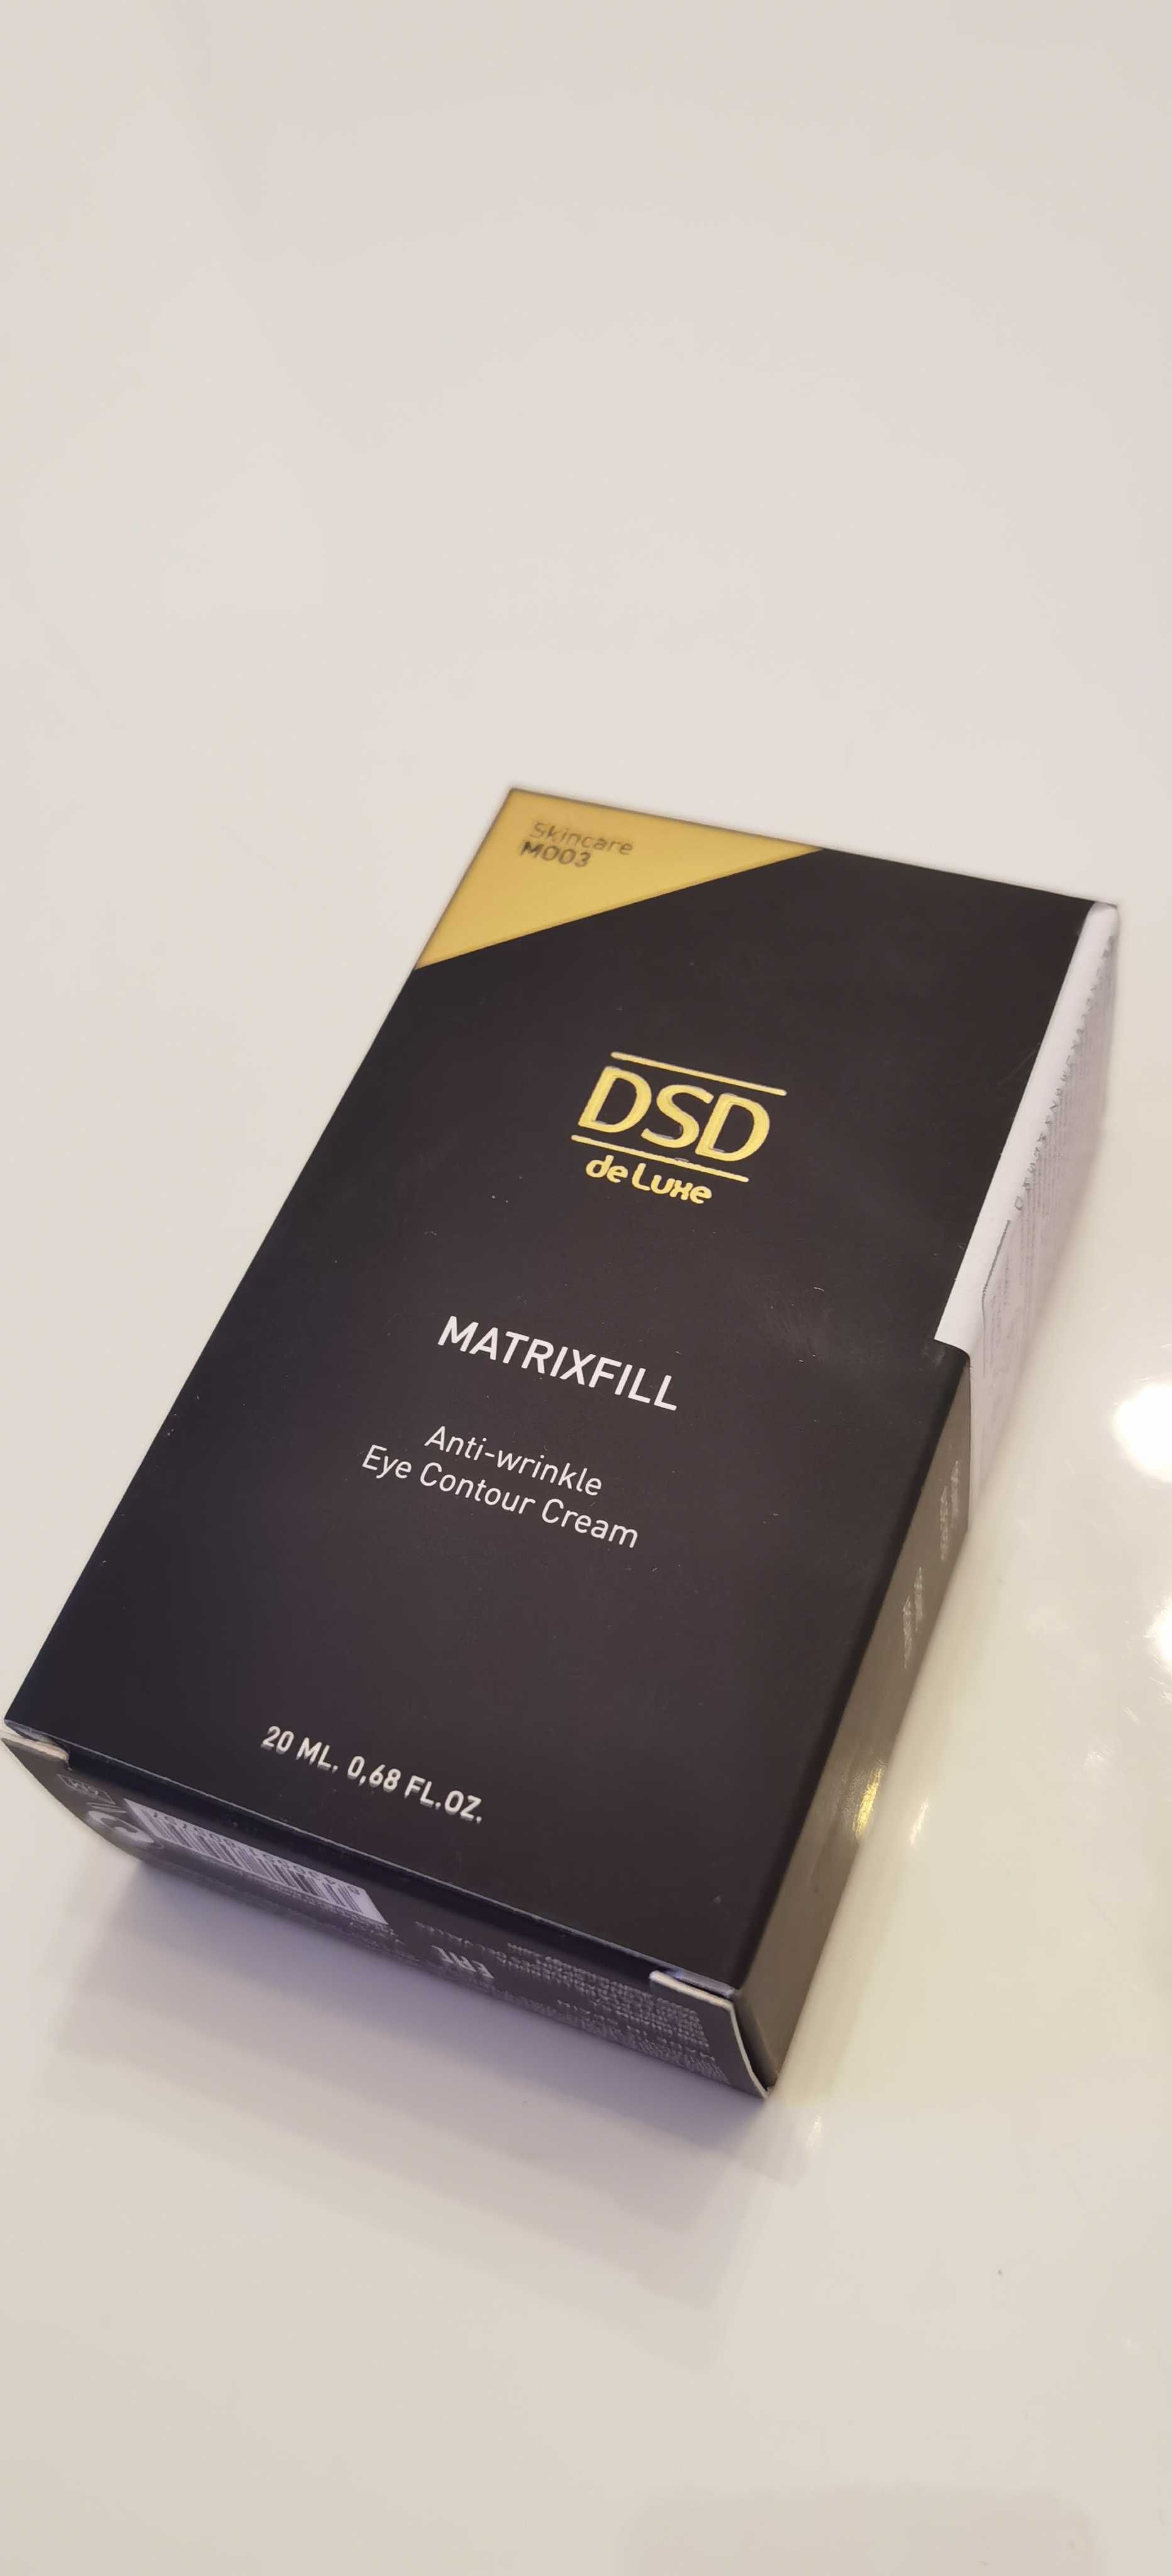 DSD M003 Matrixfill przeciwzmarszczkowy krem do konturowania oczu 20ml